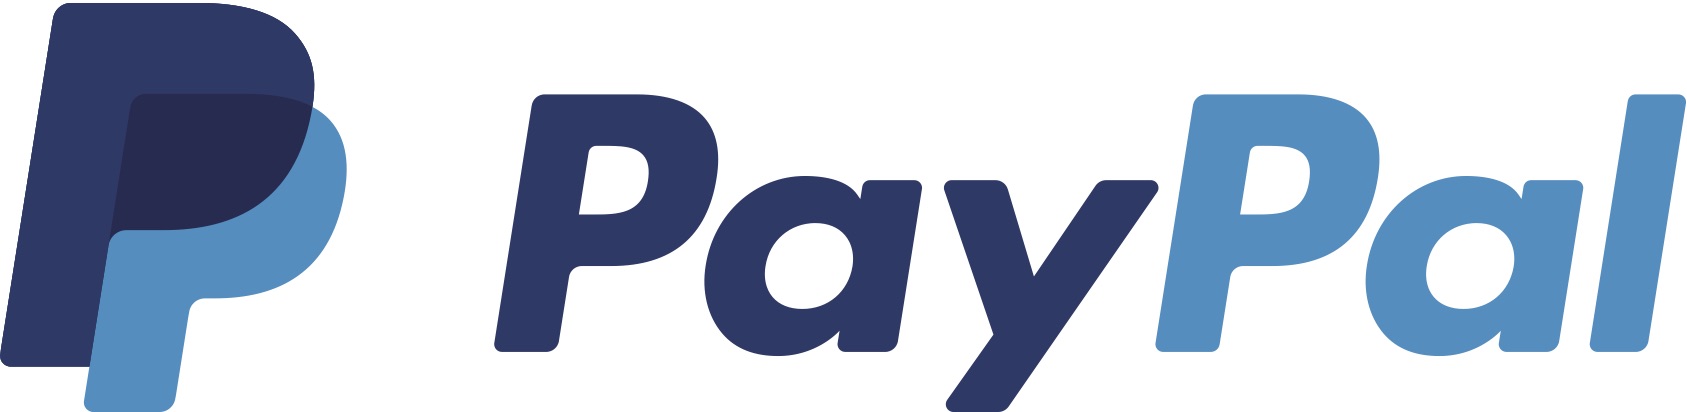 El logotipo de PayPal siempre ha sido tipográfico, aún así, recientemente creó un monograma que los identifica en diversas plataformas.